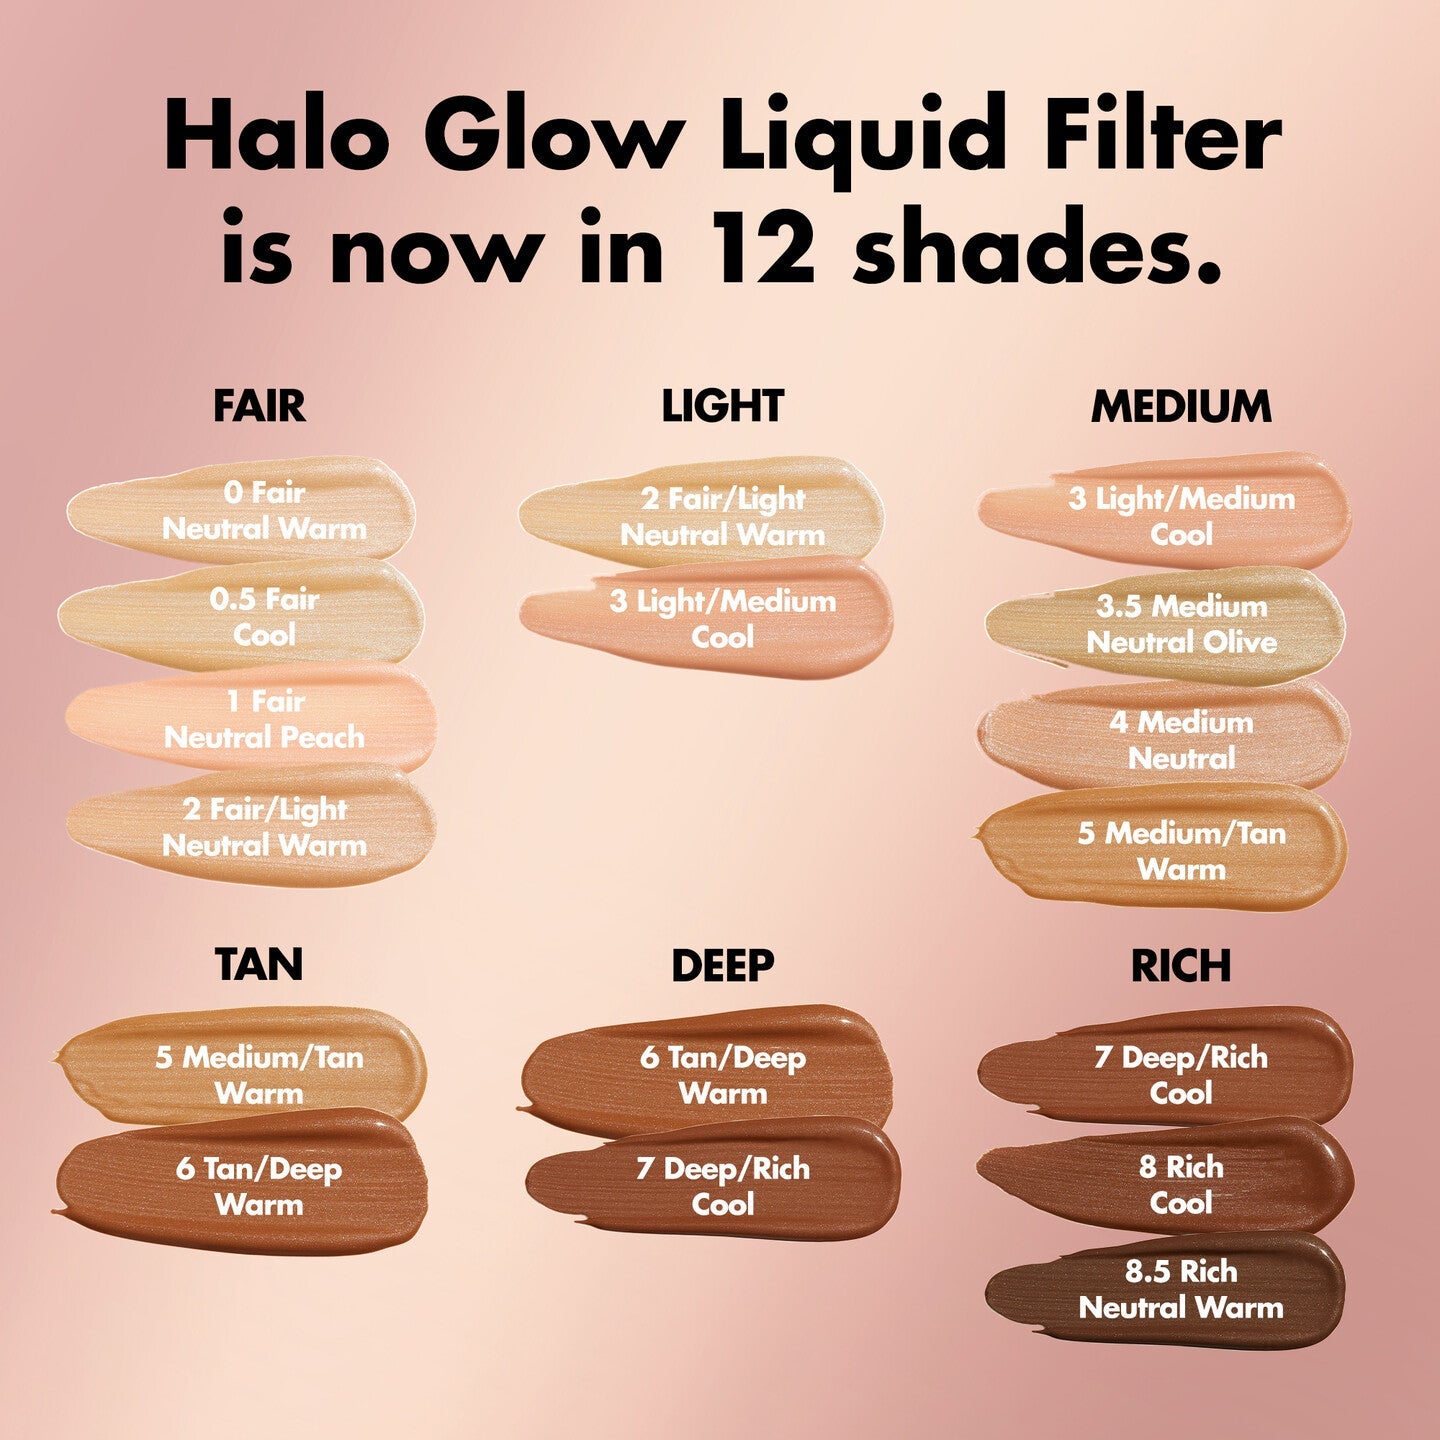 Halo Glow Liquid Filter - 0 Fair Neutral Warm